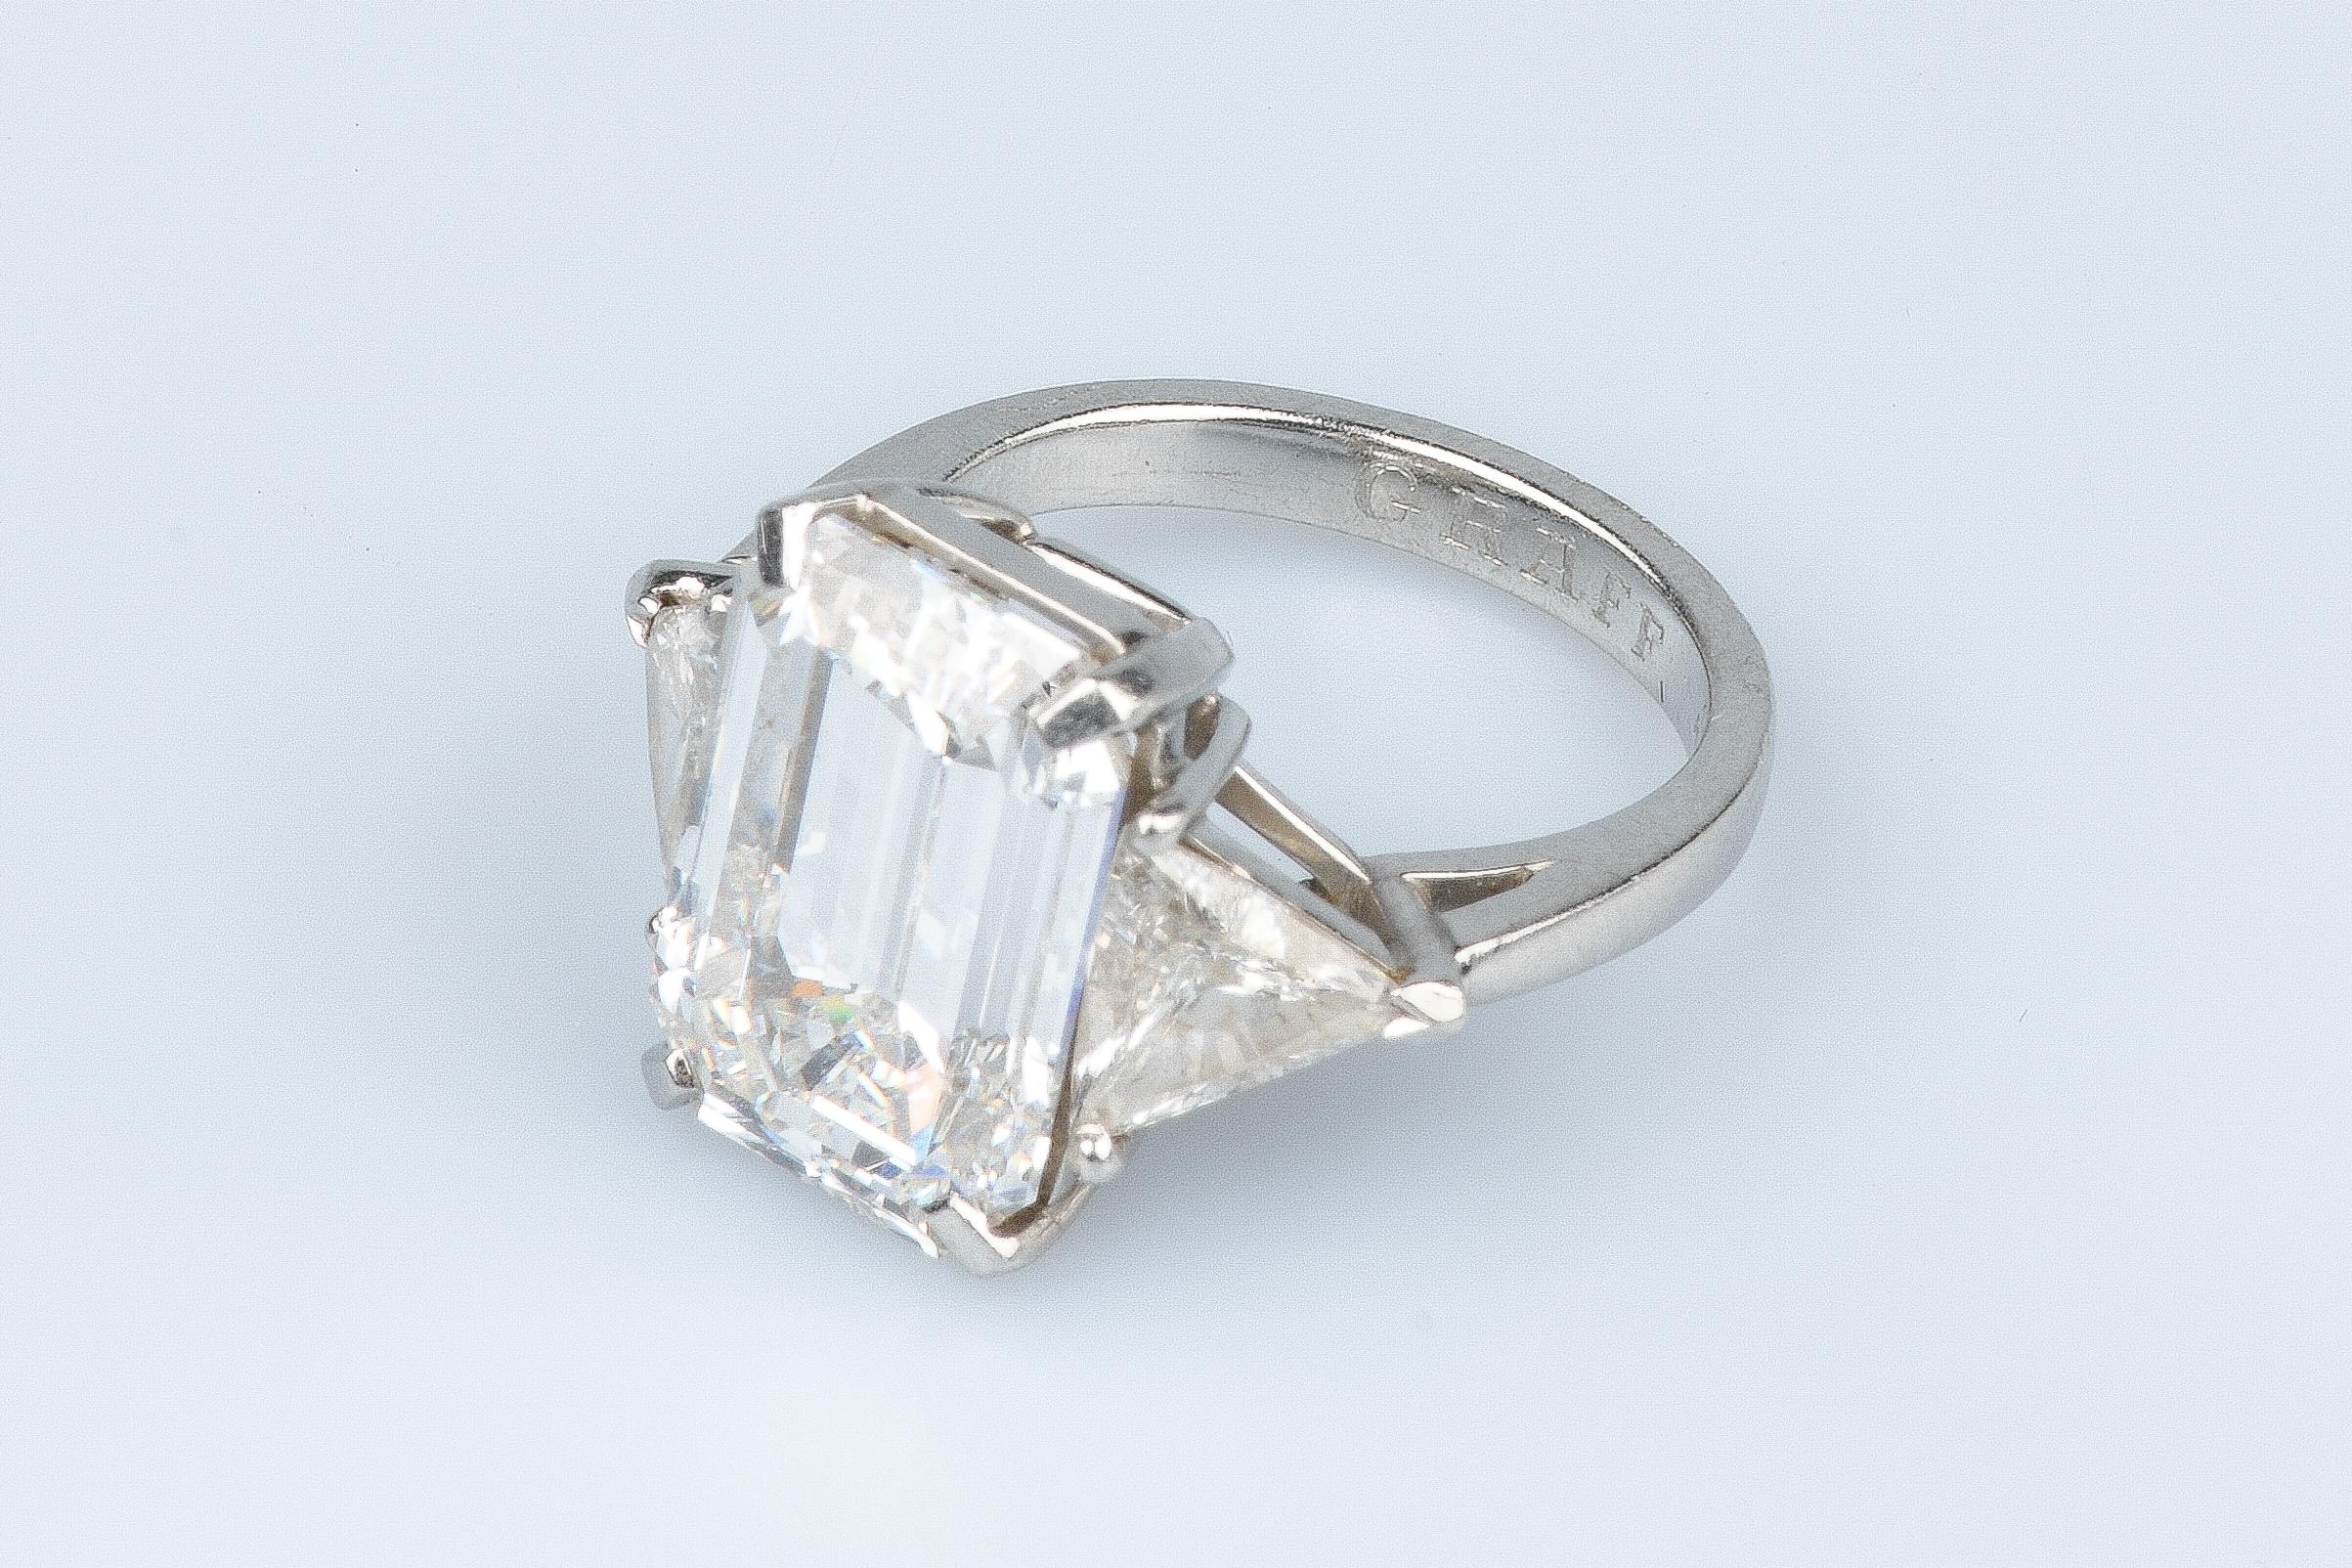 WGI certified 10.70 carat emerald cut diamond - 1.40 carat trillion cut diamonds For Sale 11